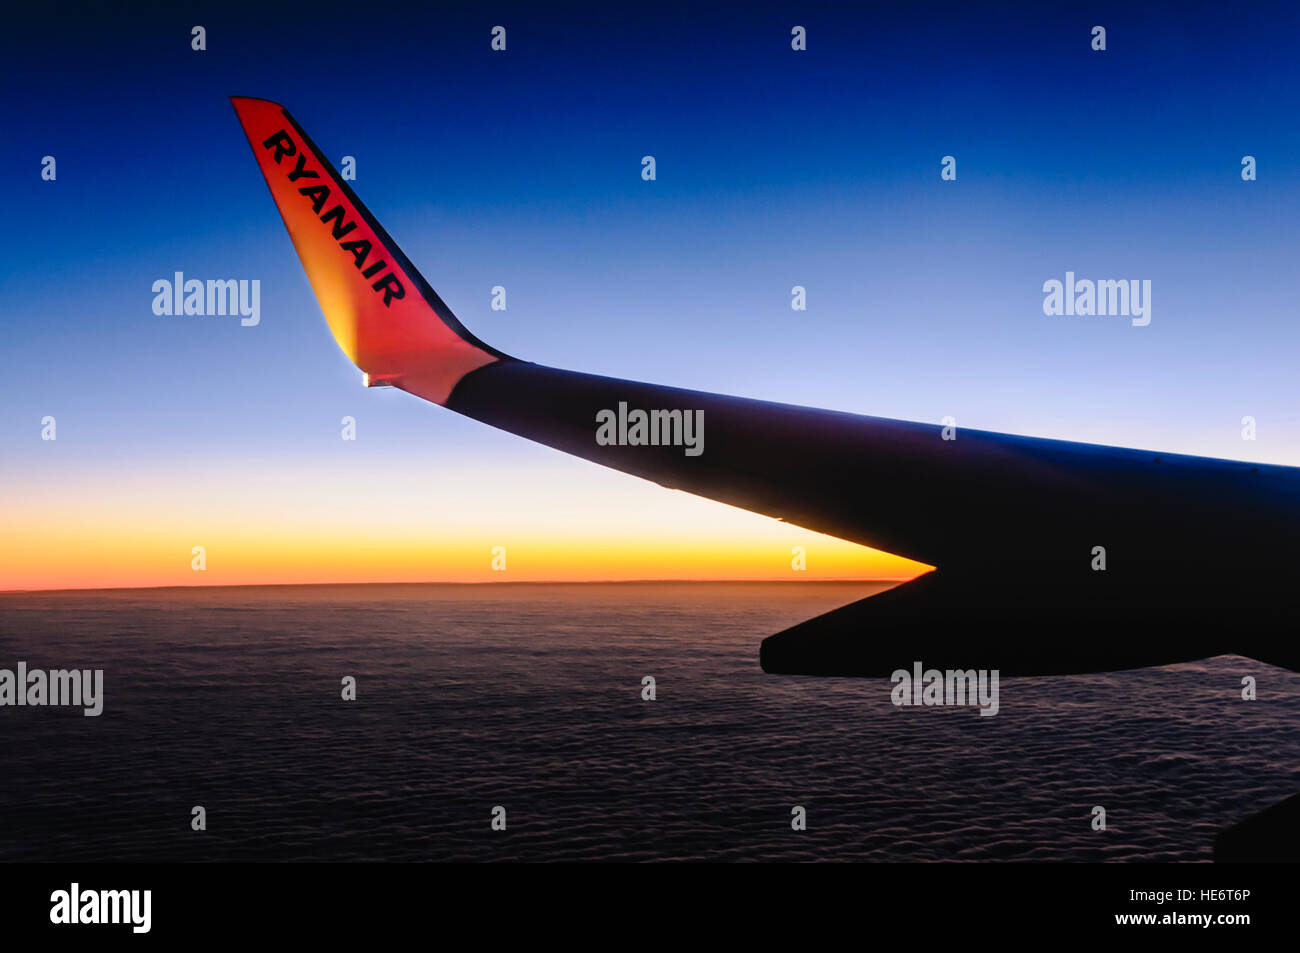 Anzeigen von einem Ryanair-Flugzeug, wie es bei Sonnenaufgang fliegt. Stockfoto